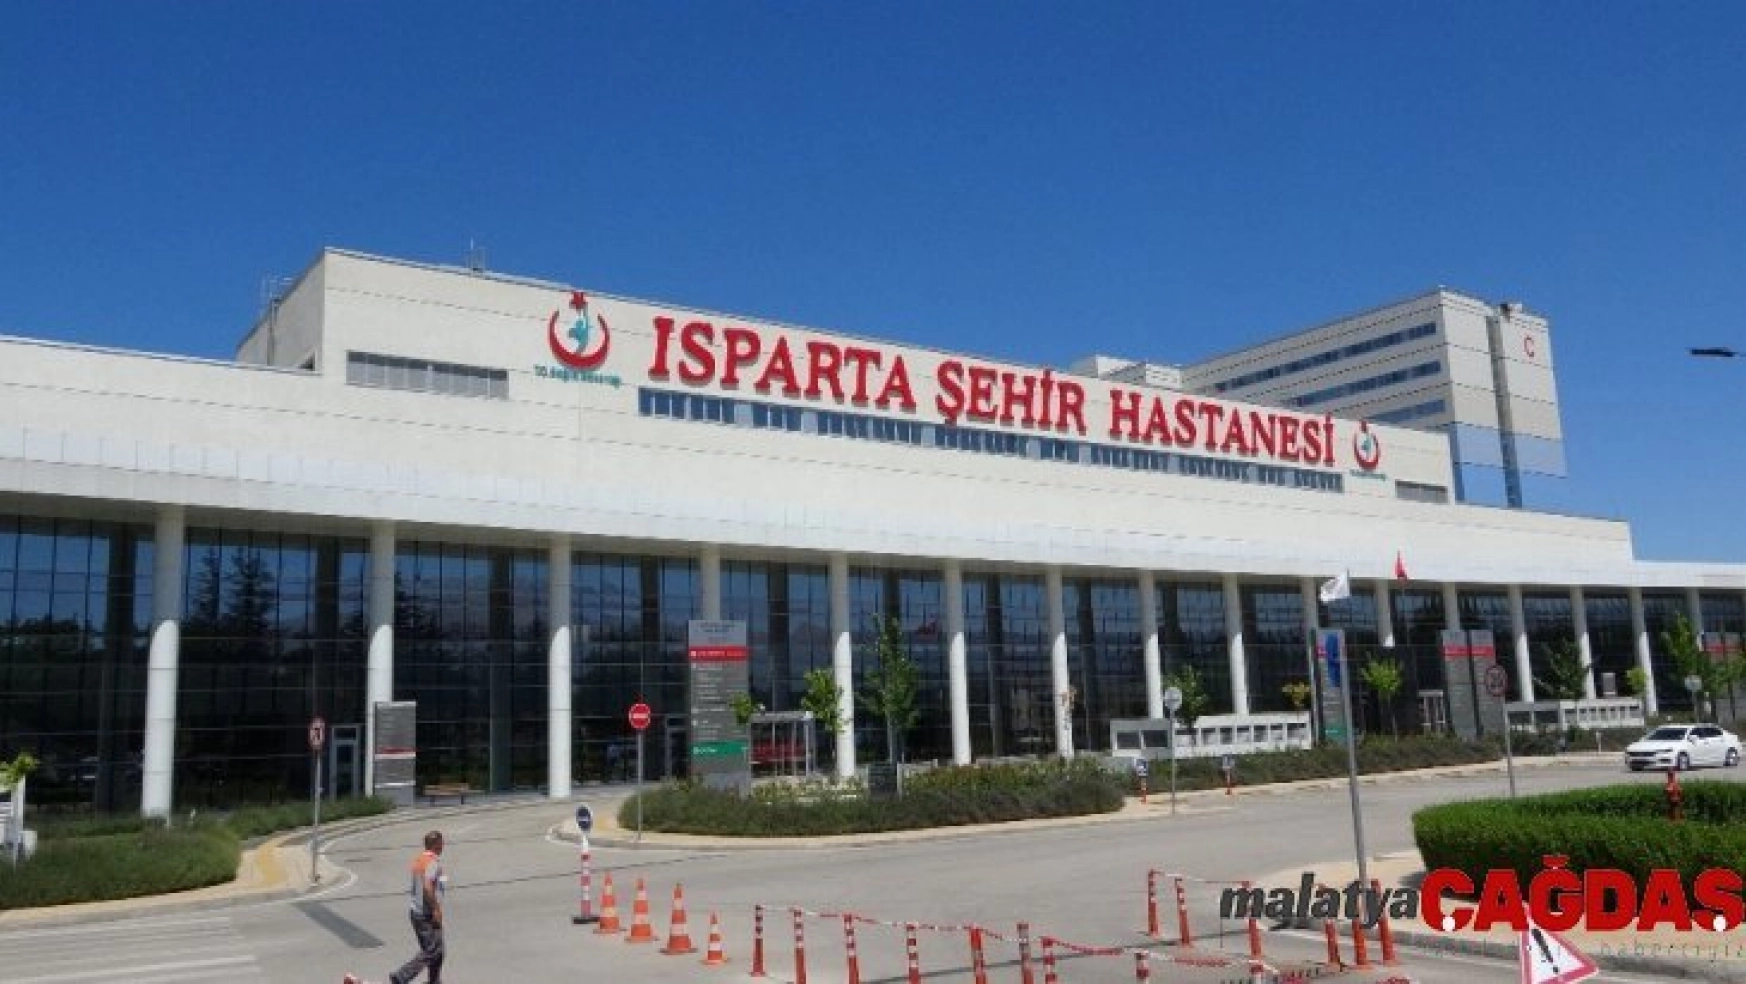 Isparta İl Sağlık Müdürlüğünden 'Isparta Şehir Hastanesi' açıklaması